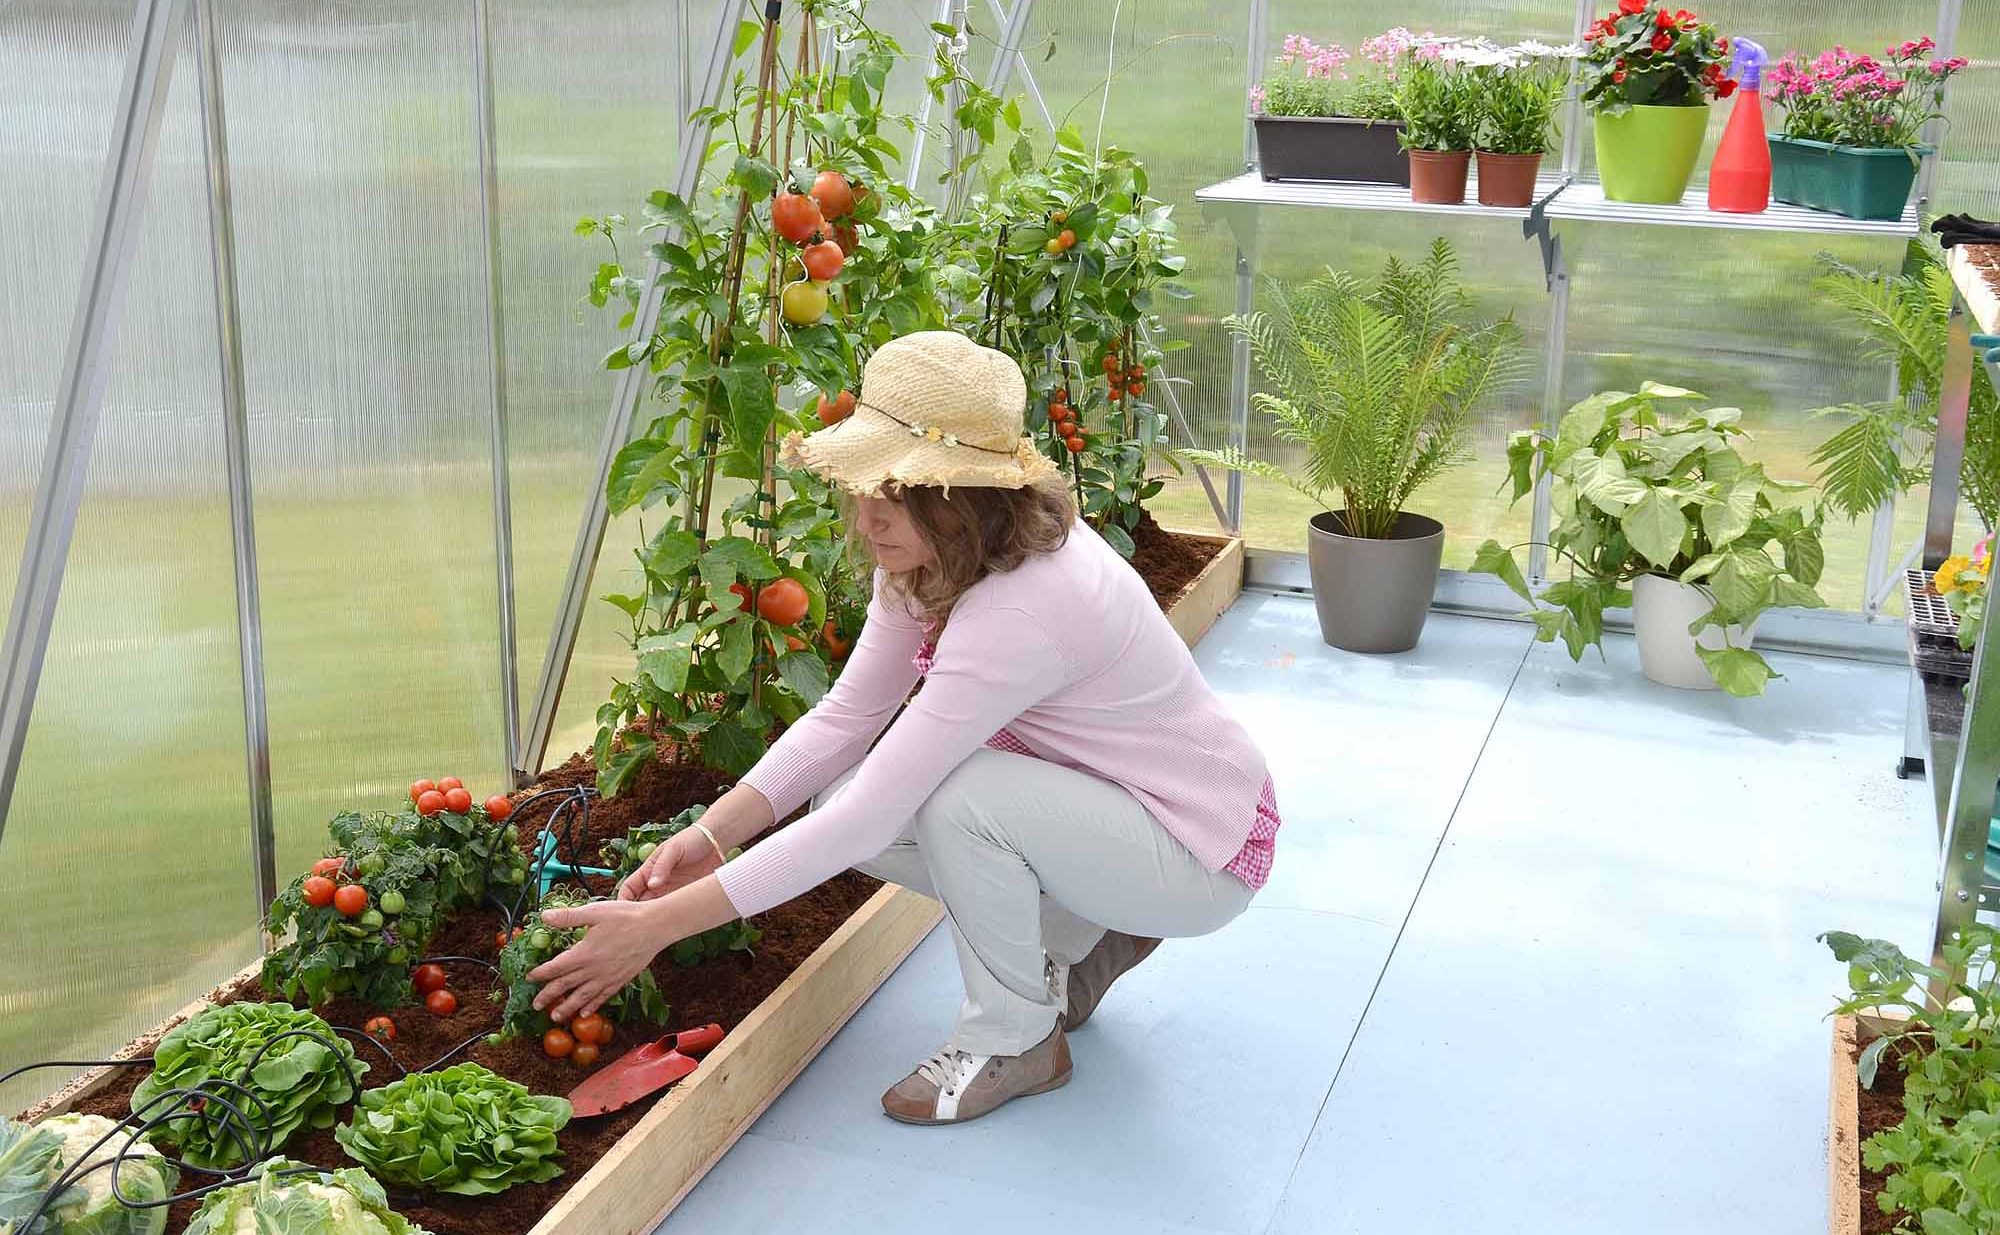 RebuildGarden Indoor Vegetable Gardening for Fresh Veggies By Hydroponics System